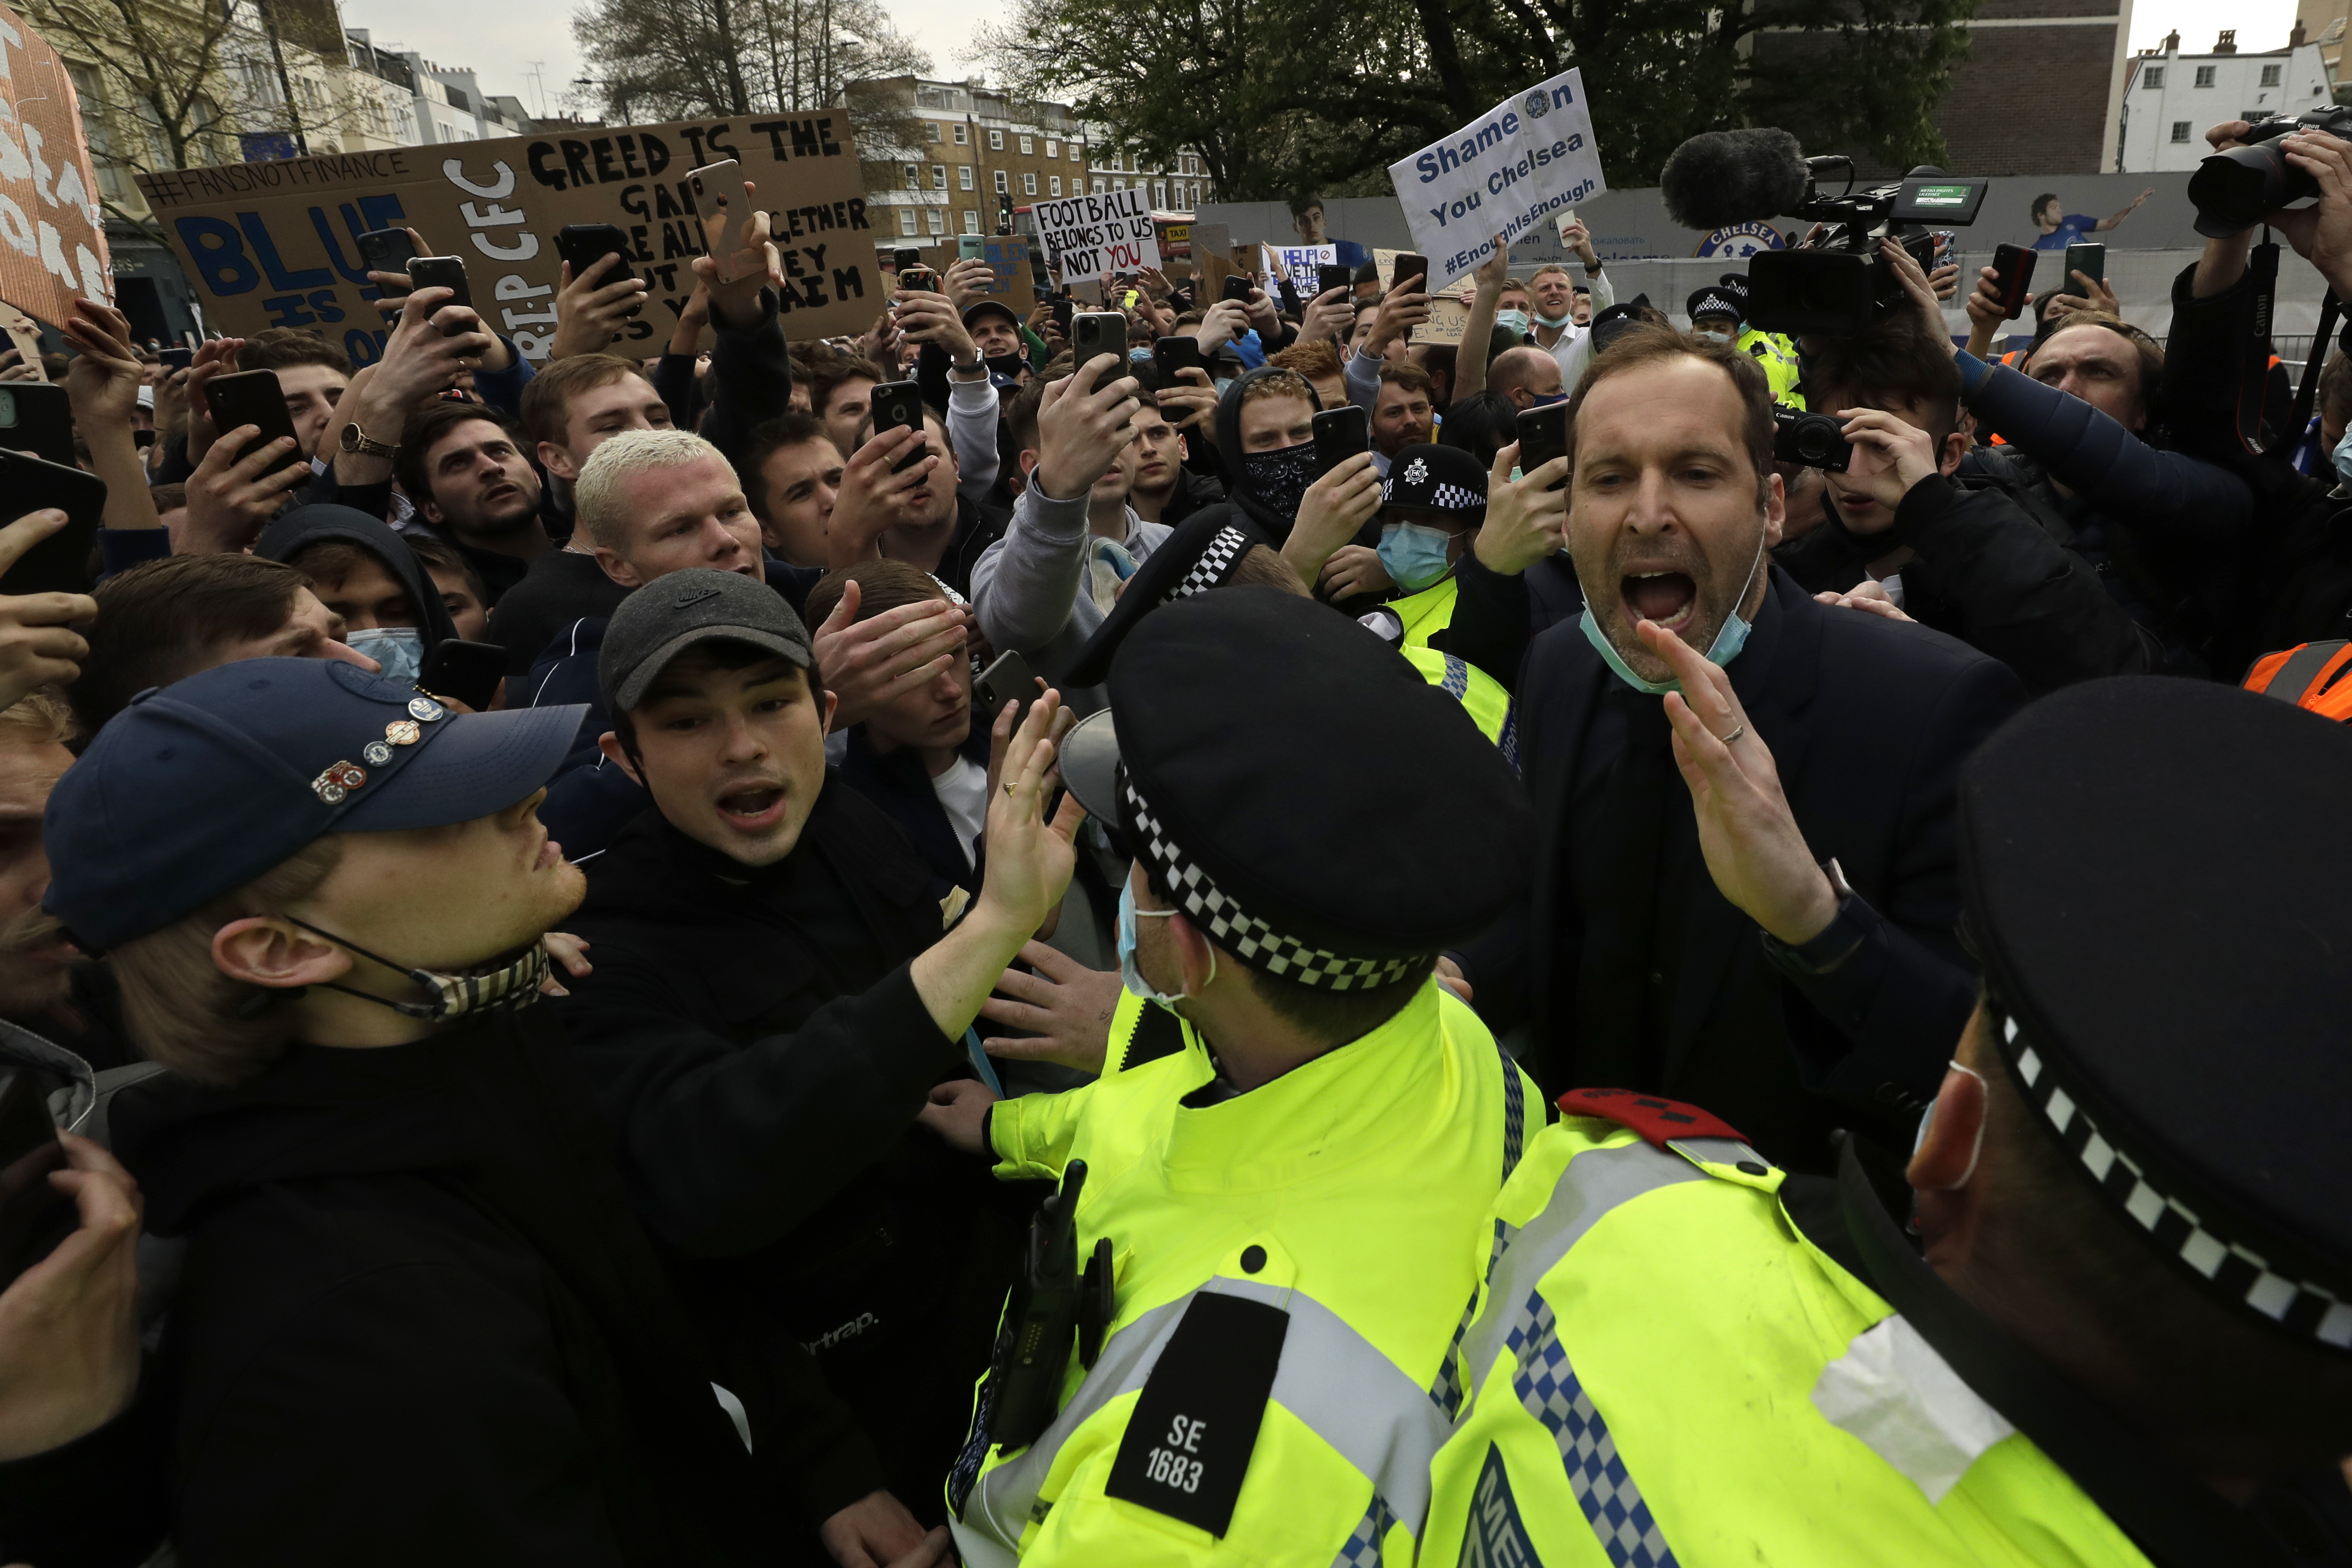 愤怒的切尔西球迷聚集在史丹福桥球场外抗议球会参加欧超联 ，在一群警察后面的切赫（右） 试图平息球迷们，他还被骂“叛徒”。（美联社照片）

